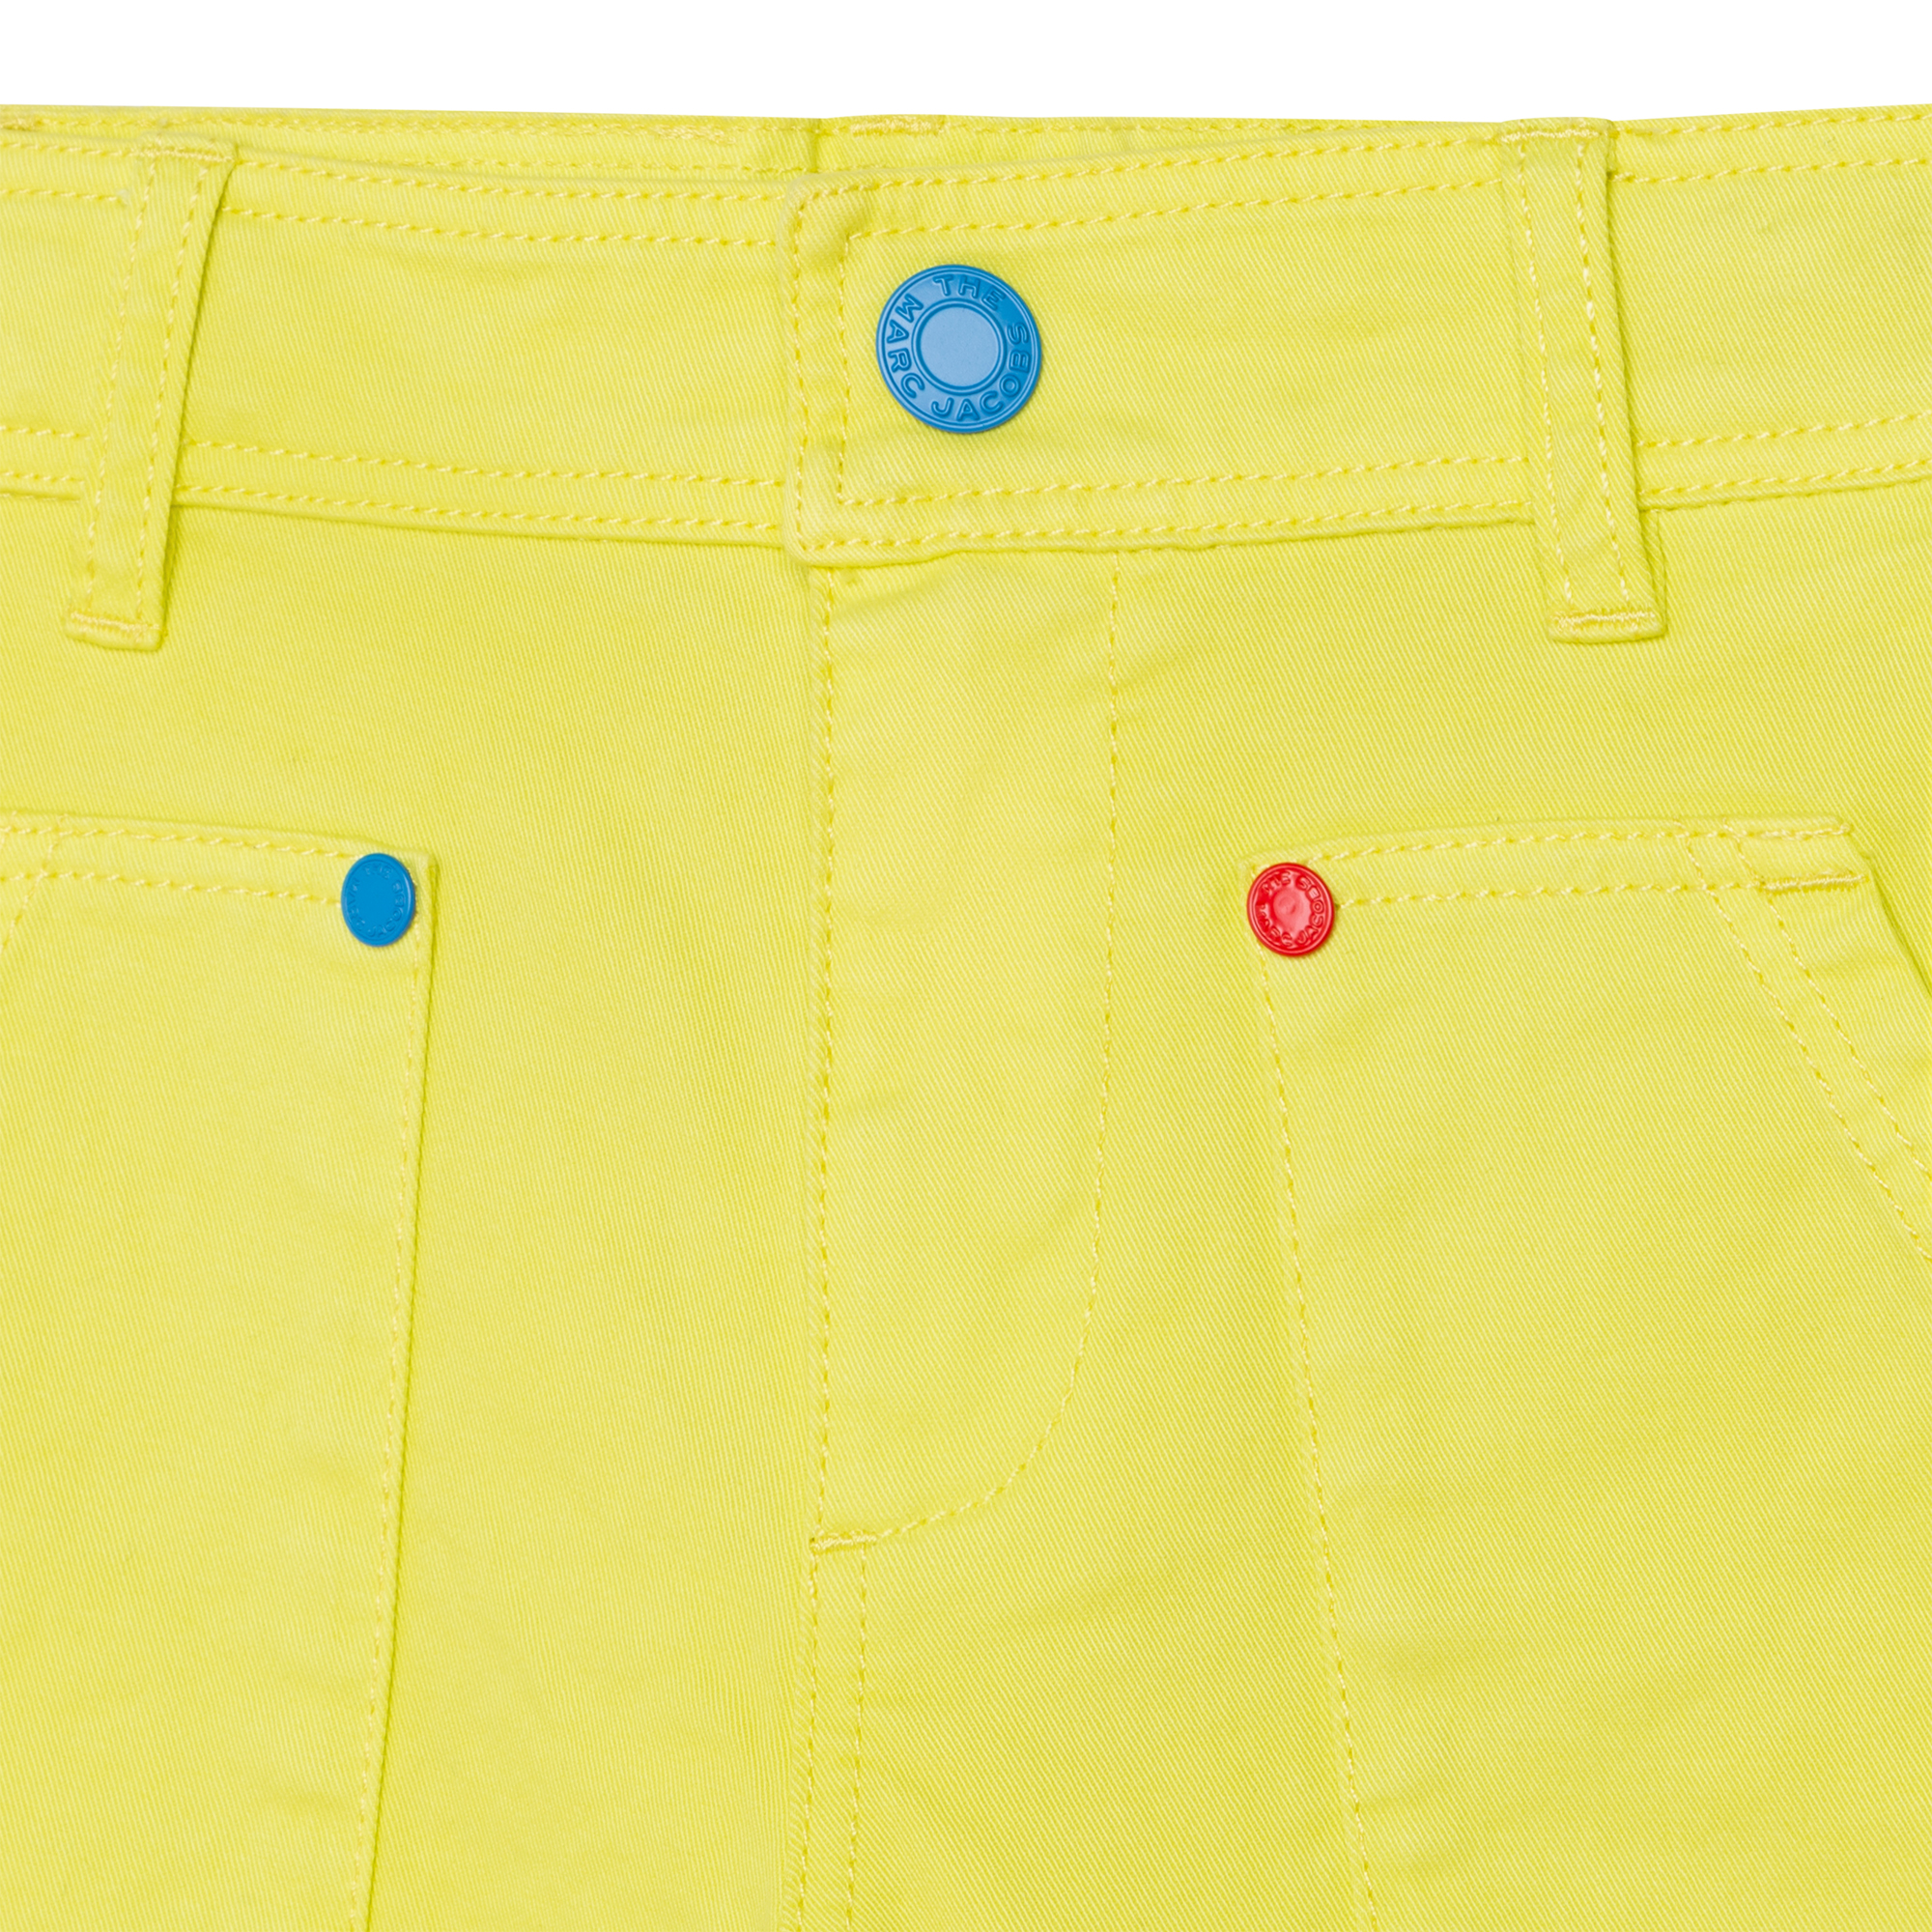 Bermuda-Shorts mit Ziernieten MARC JACOBS Für JUNGE